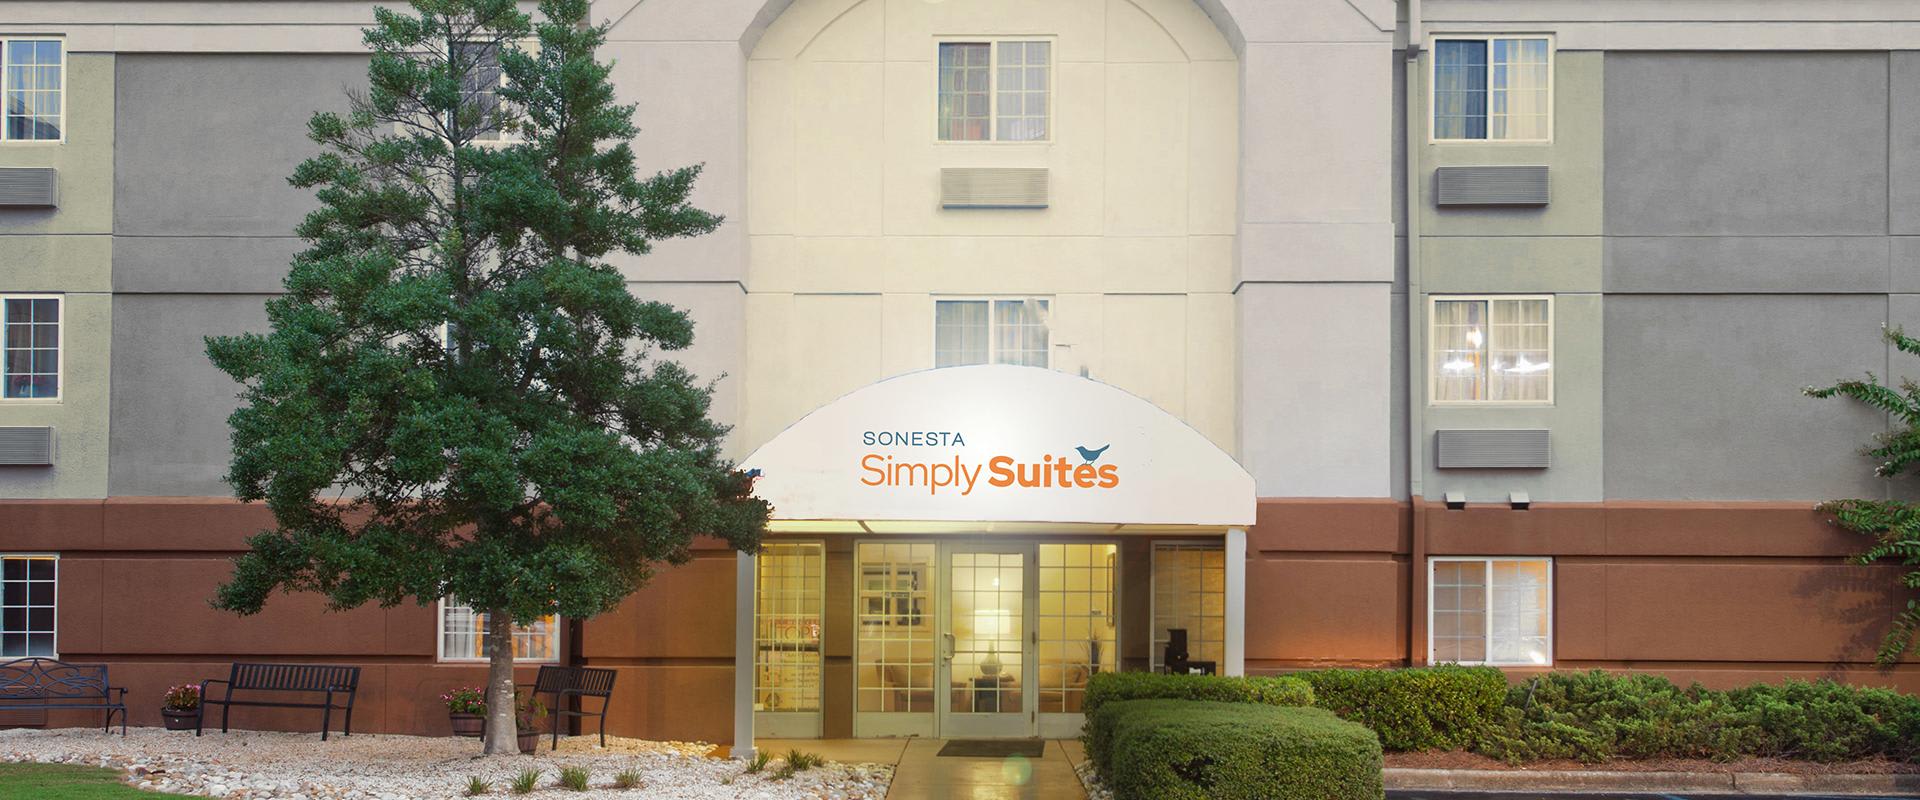 Sonesta Simply Suites Birmingham Hoover Hotel Entrance